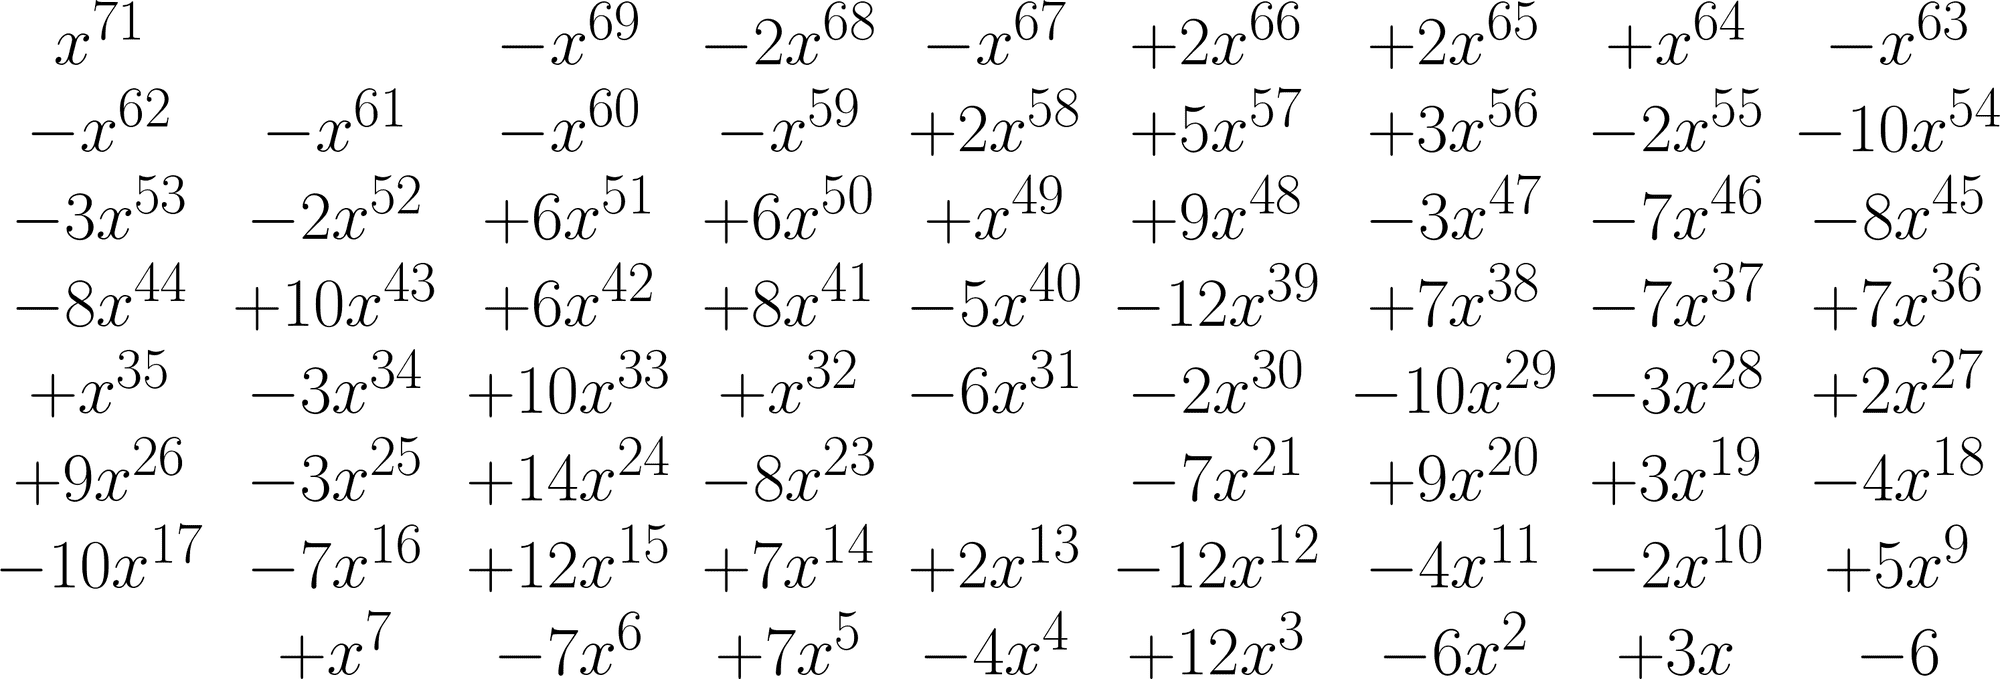 Die Nullstelle dieses Polynoms 71. Grades gibt die Conway-Konstante eines Zahlenrätsels an.